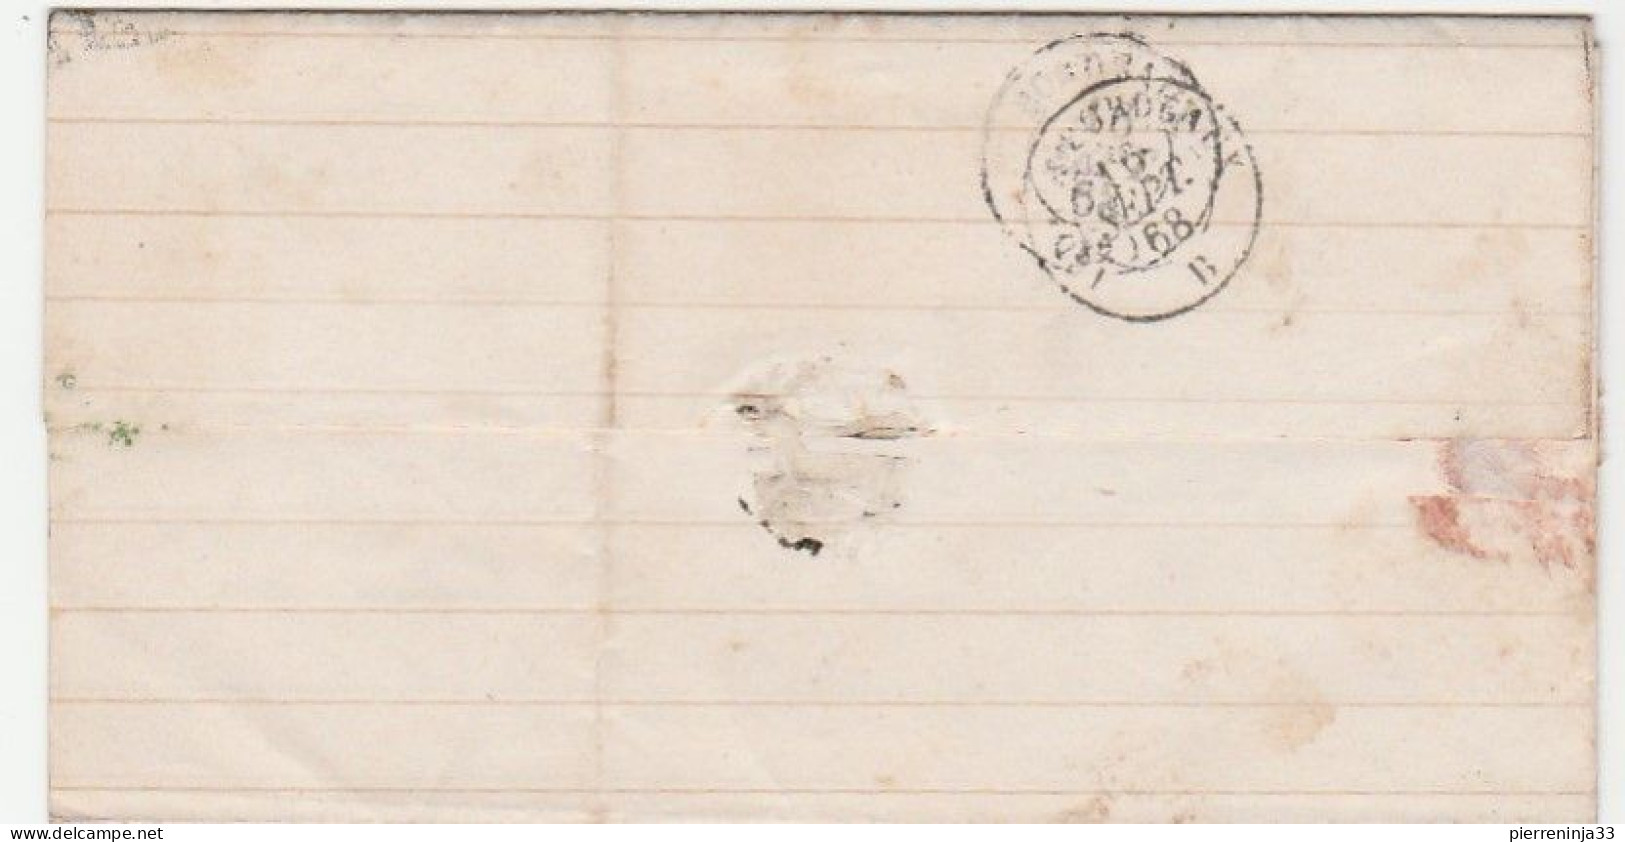 Lettre Avec Napoléon N°29, Cachet Perlé "Saugnac Et Muret" Landes, GC 4918, Ind18 (340e), Cachet "OR" - 1863-1870 Napoleone III Con Gli Allori